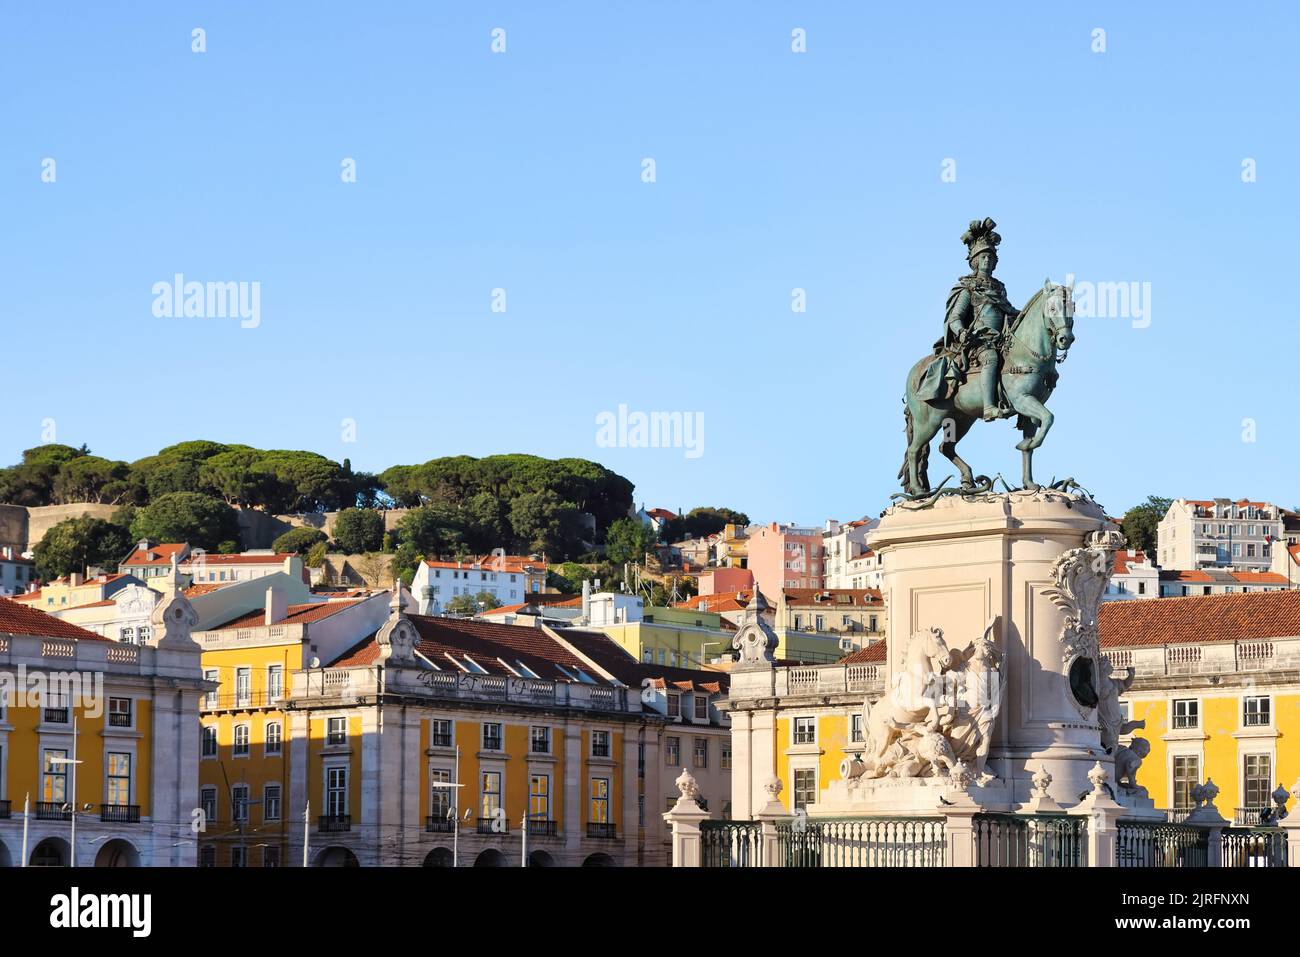 Lisboa, capital de Portugal. Paisaje urbano visto desde Praça do Comércio, Plaza de Comercio con estatua del rey José I. Espacio de copia, coloque su texto. Foto de stock